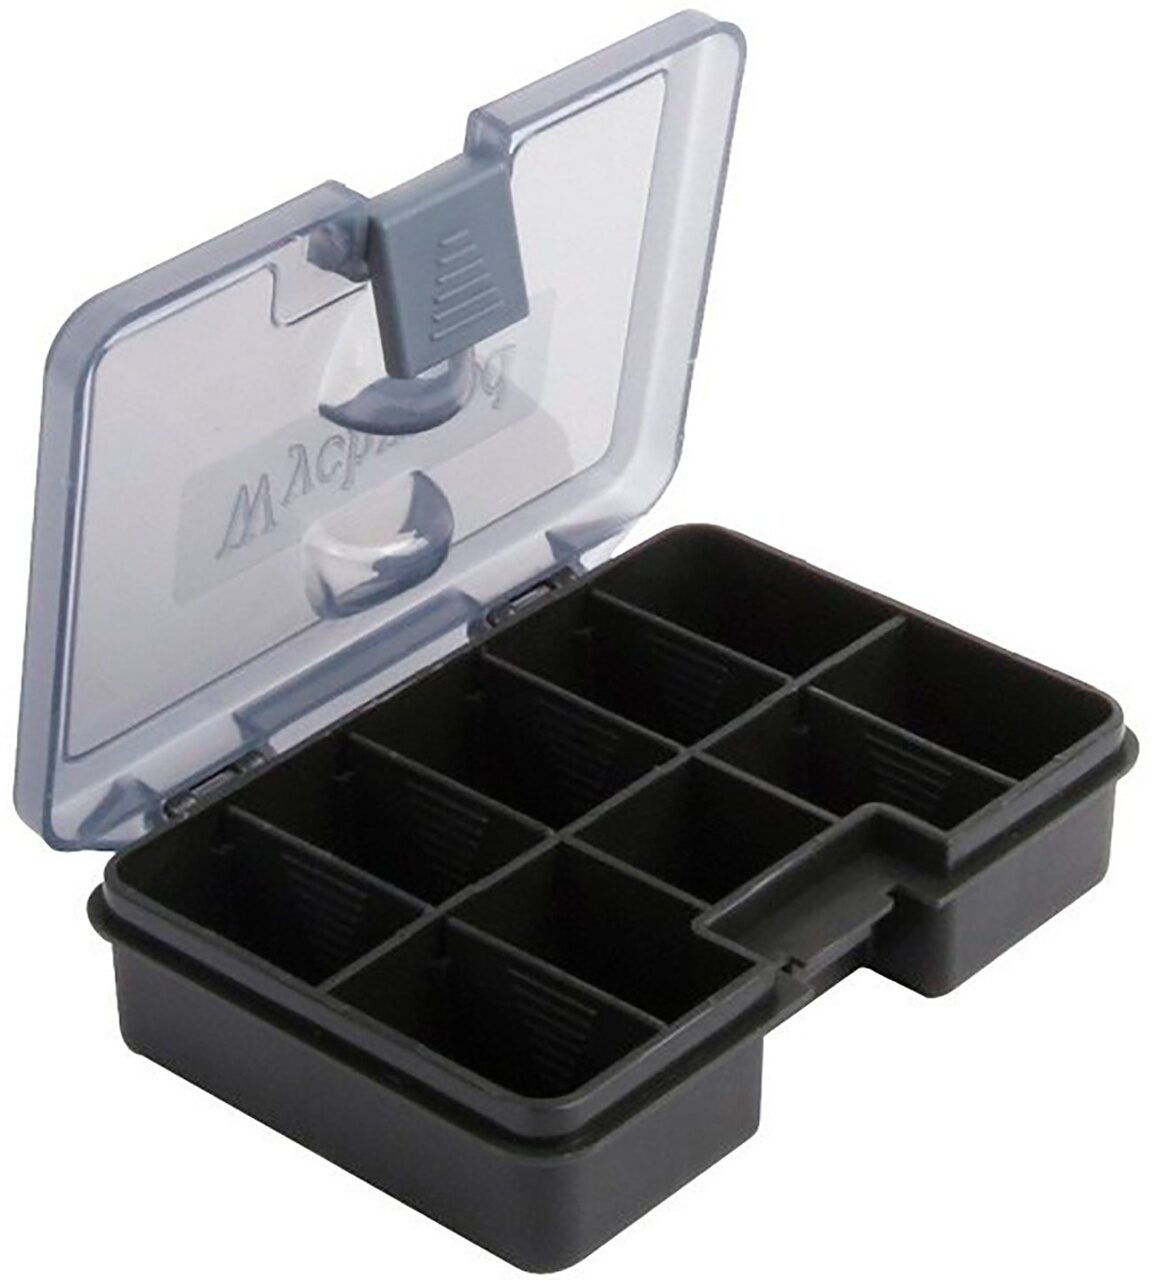 Коробка для аксессуаров Средняя Wychwood (Вичвуд) - Internal Tackle Box Medium